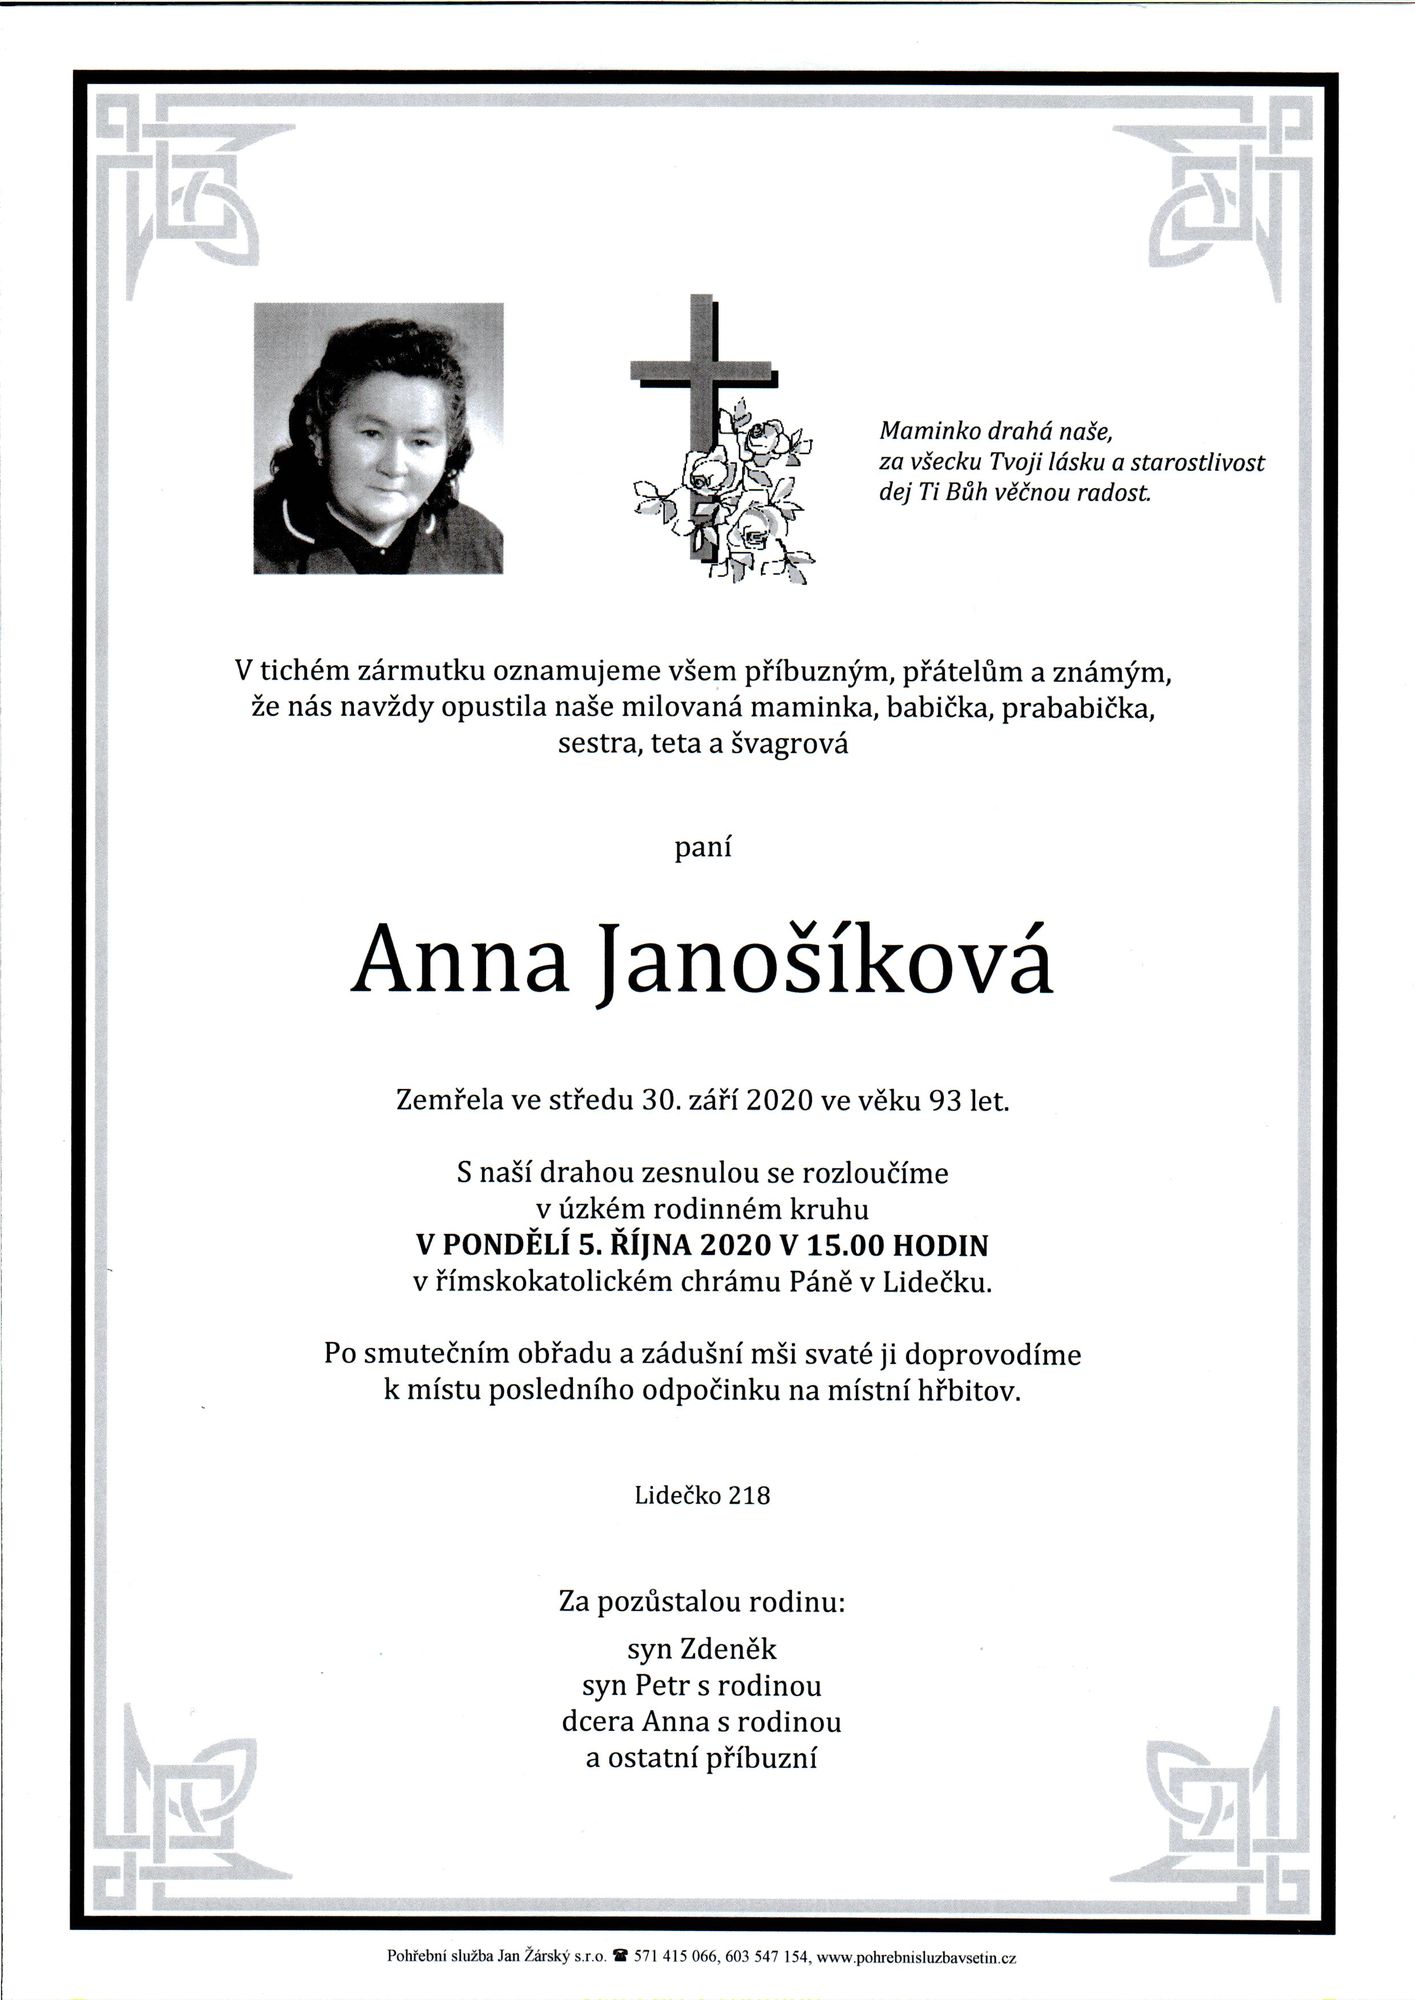 Anna Janošíková